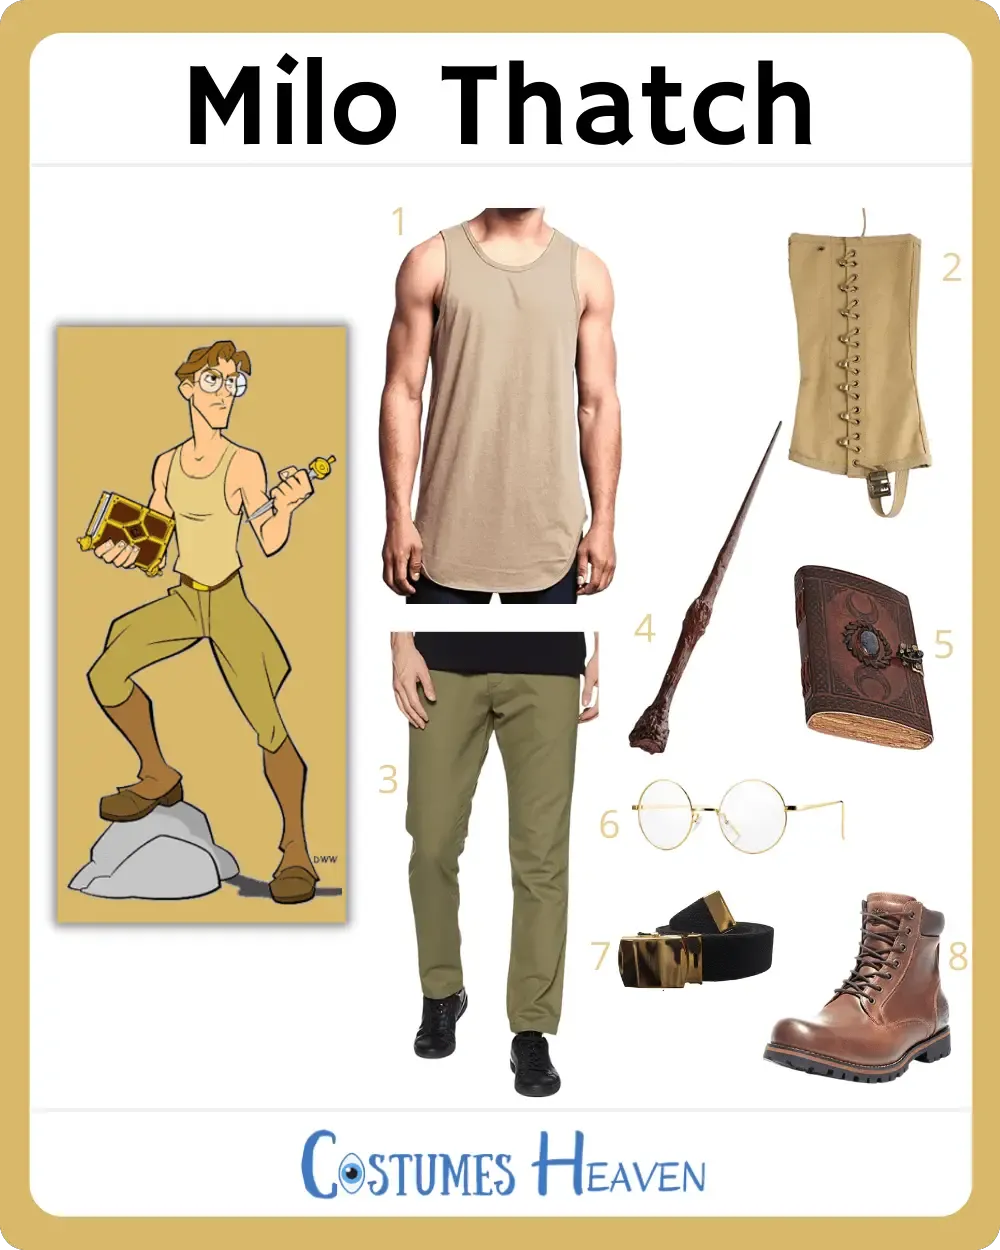 Milo Thatch costume